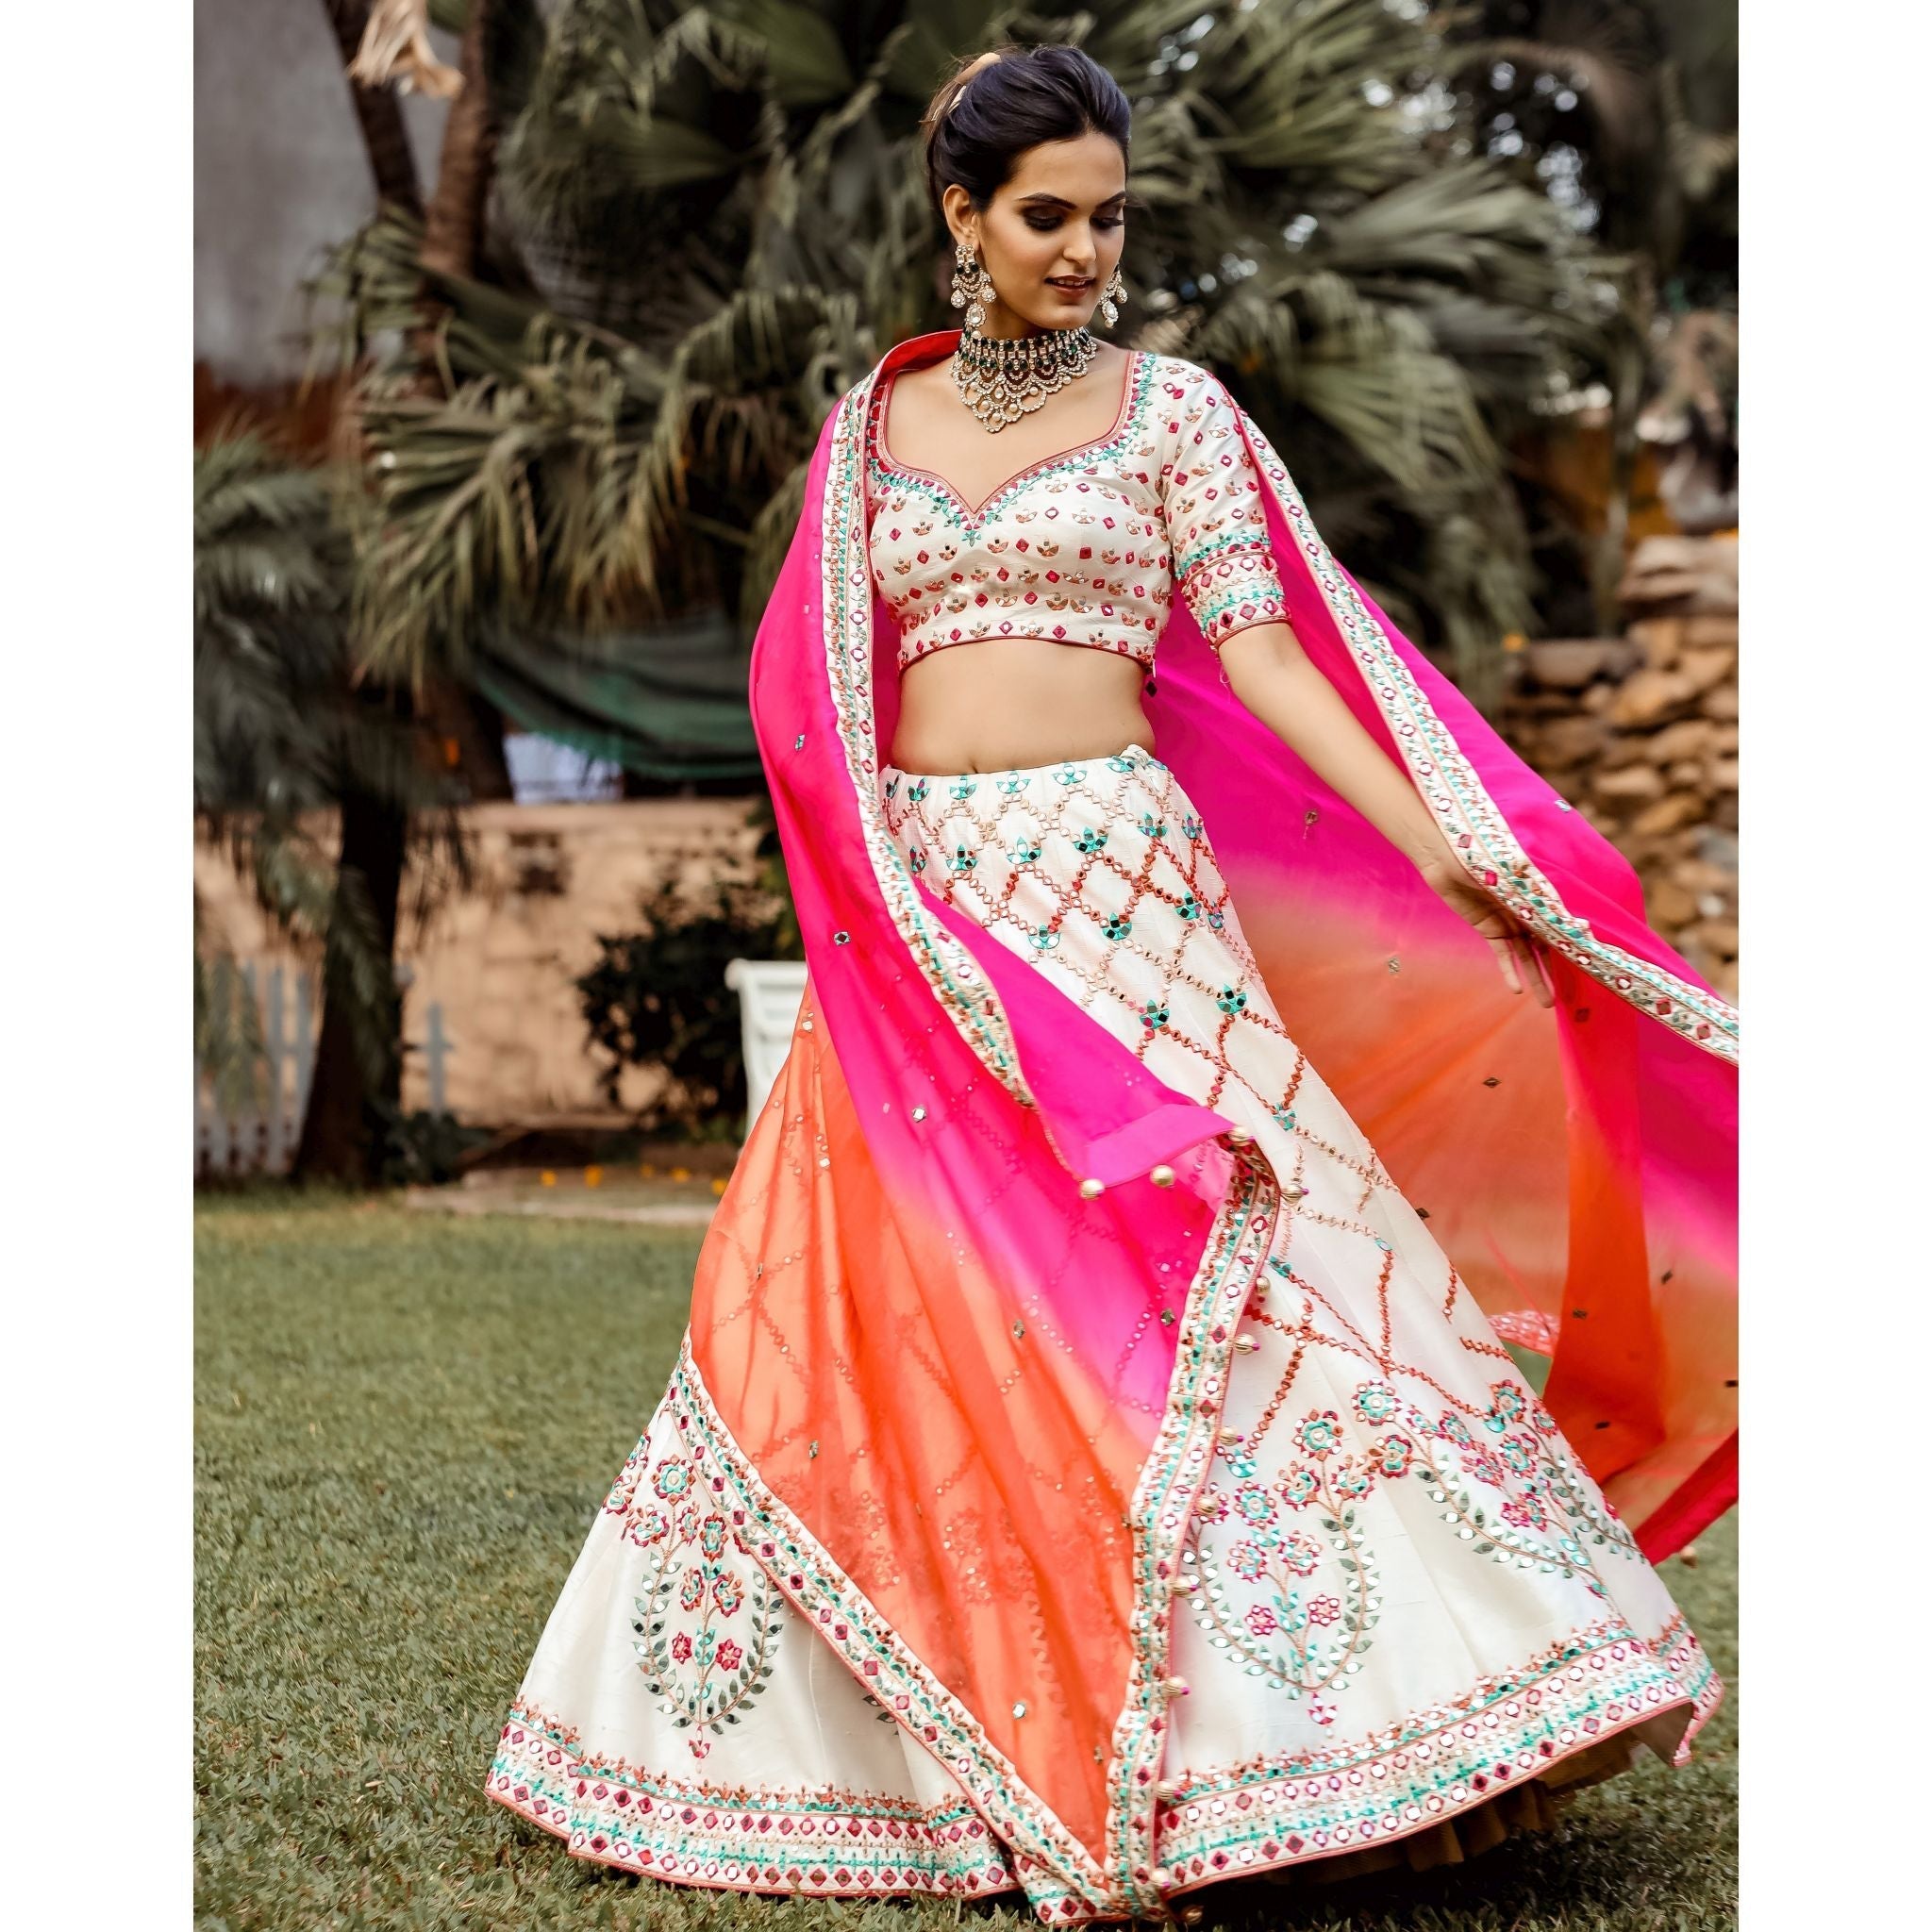 Ivory And Pink Mirrorwork Lehenga Set - Indian Designer Bridal Wedding Outfit